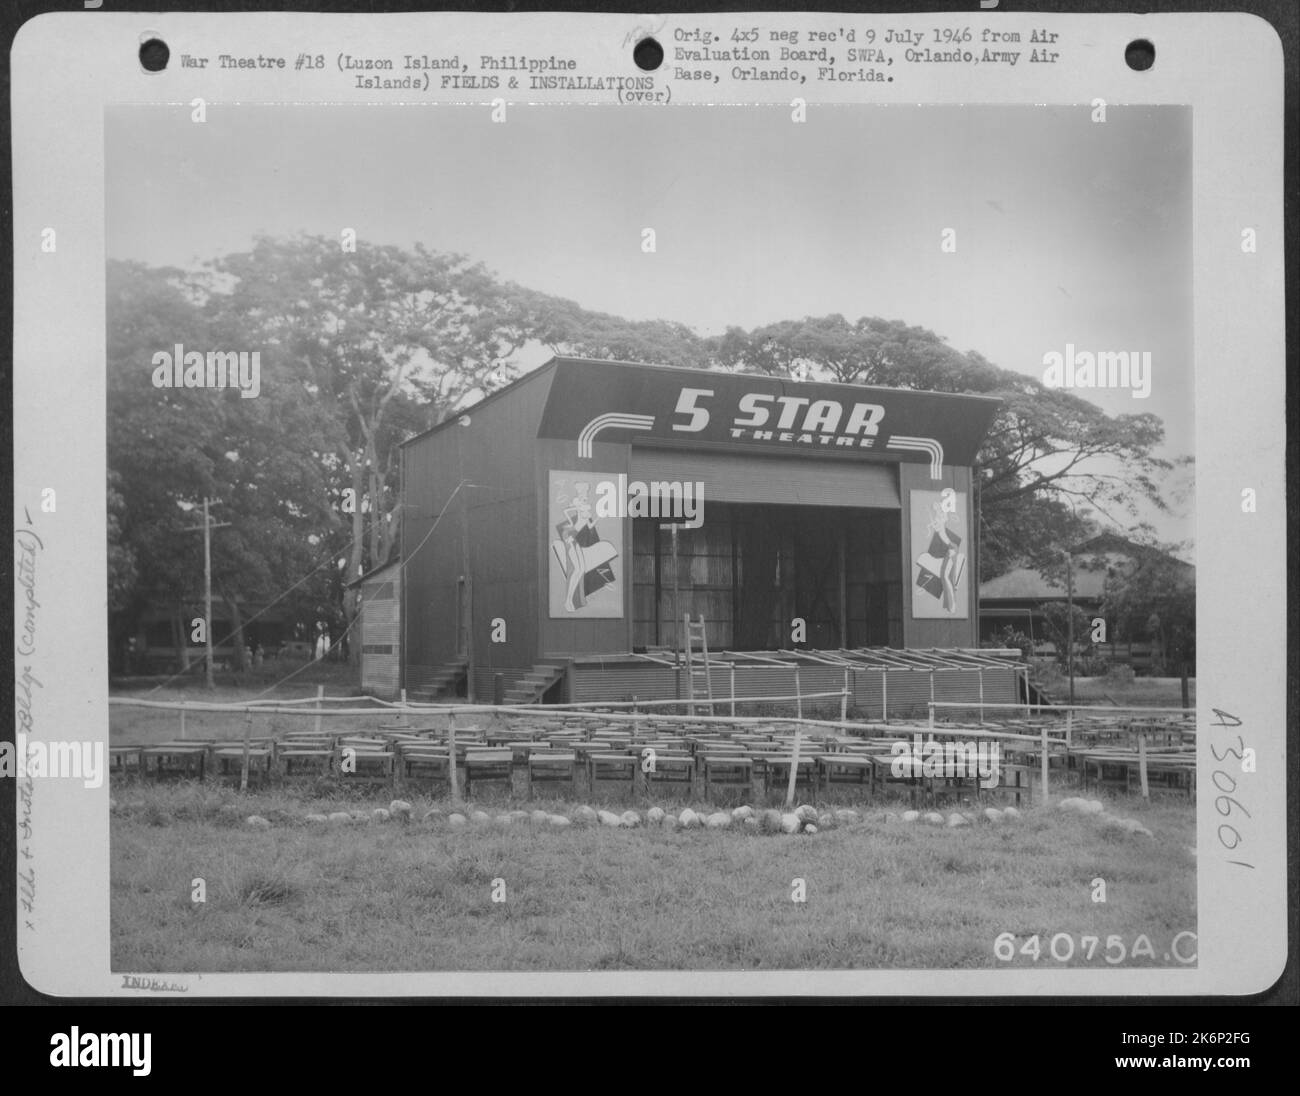 „Star“-Theater der Fünften Luftwaffe. Luzon Island, Philippinische Inseln, 1945. Stockfoto